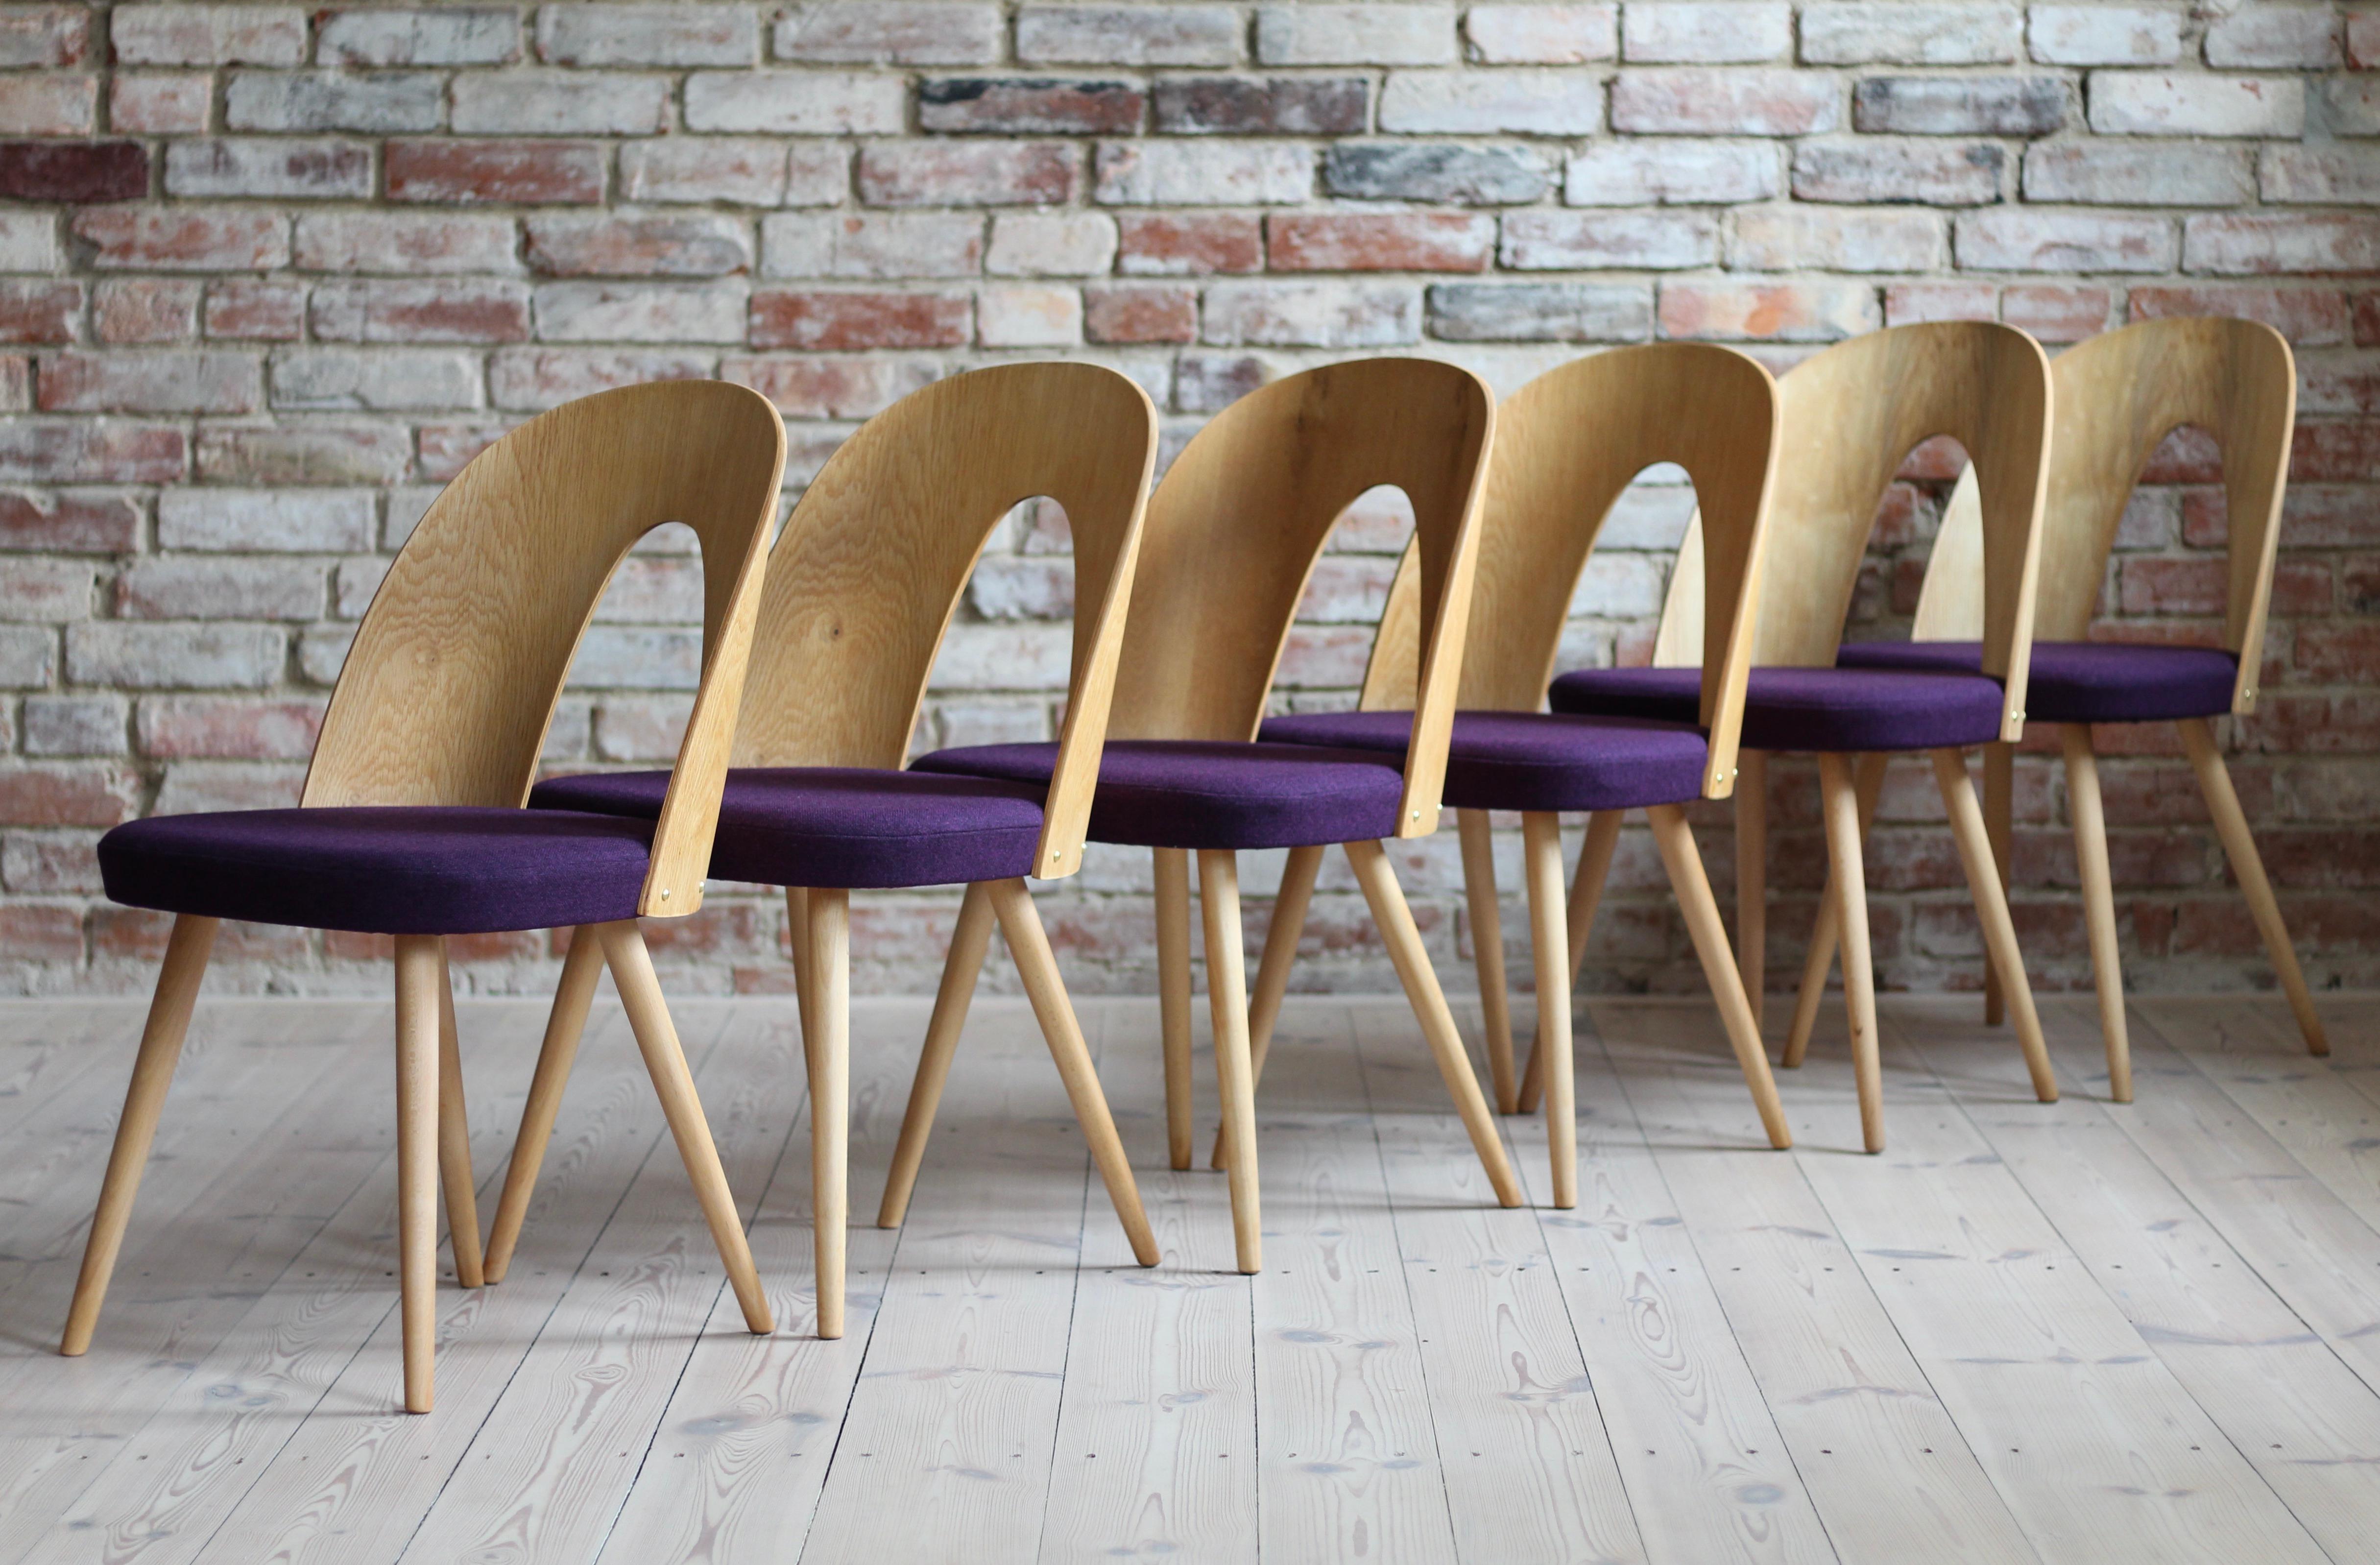 Cet ensemble de douze chaises de salle à manger vintage a été conçu par le designer tchèque Antonin Šuman dans les années 1960. Les chaises ont été entièrement restaurées et finies avec une huile de haute qualité qui leur a donné une finition